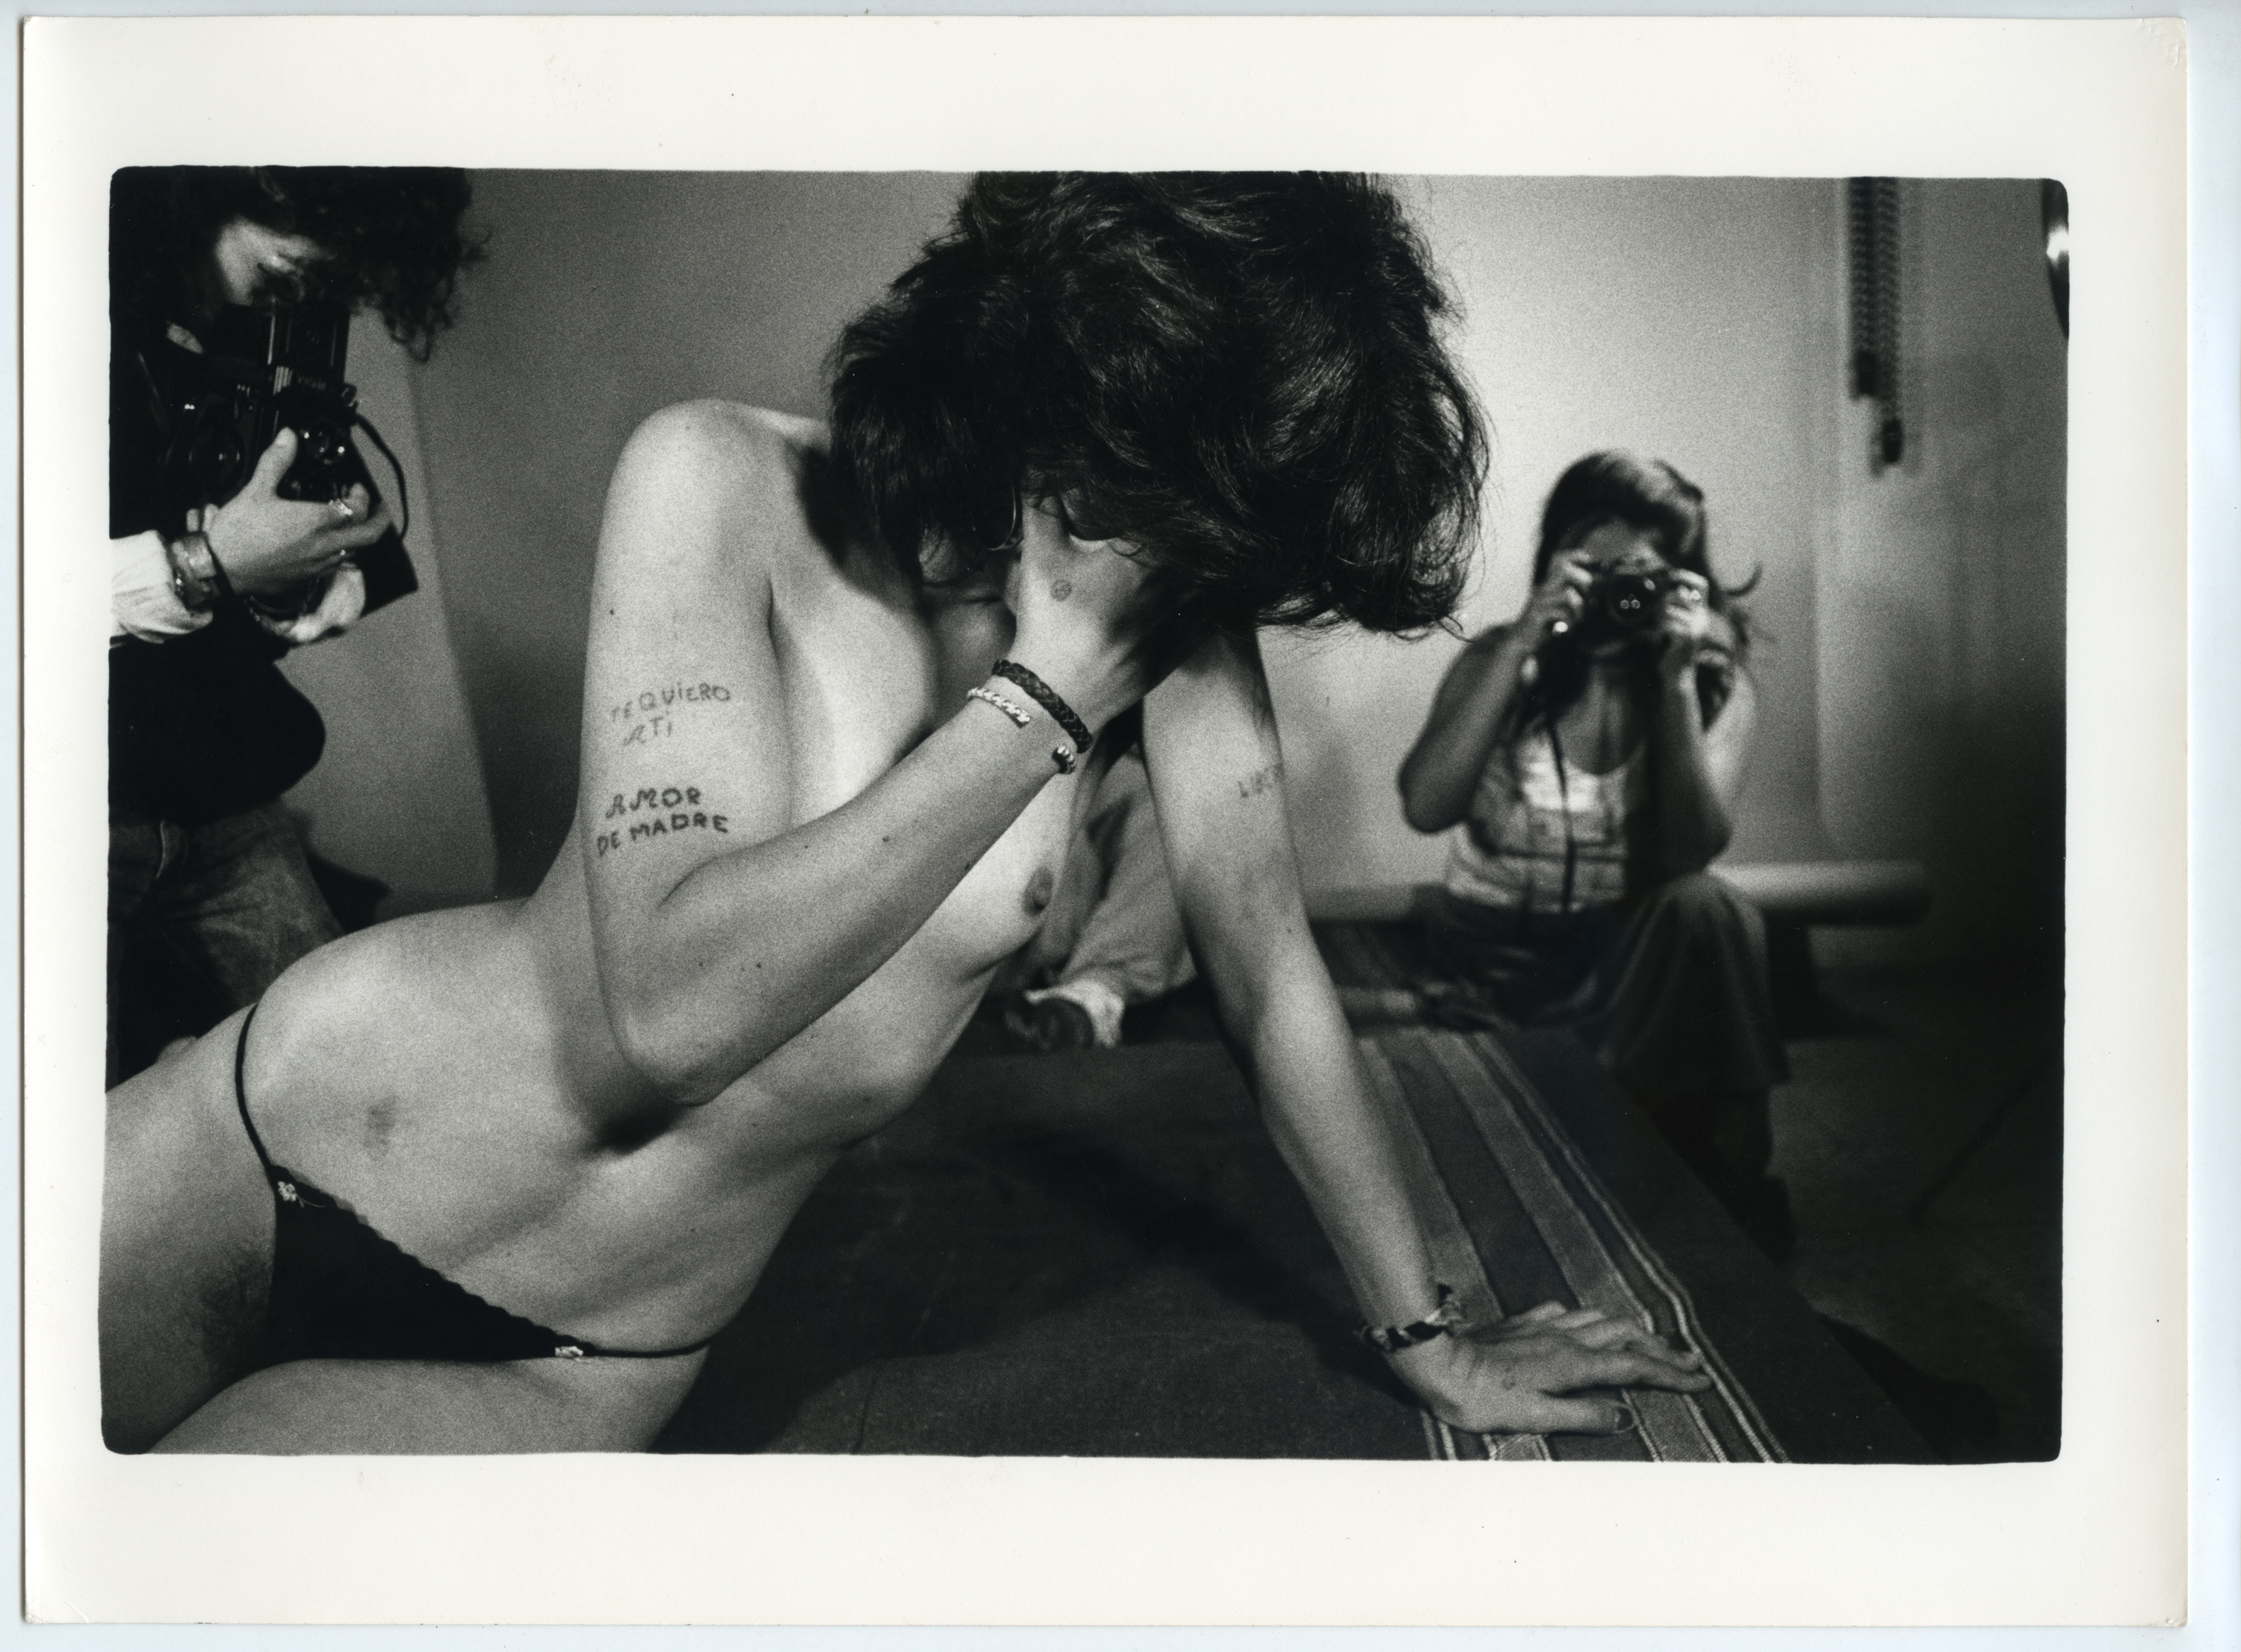 Carcere femminile. Madrid, 1987